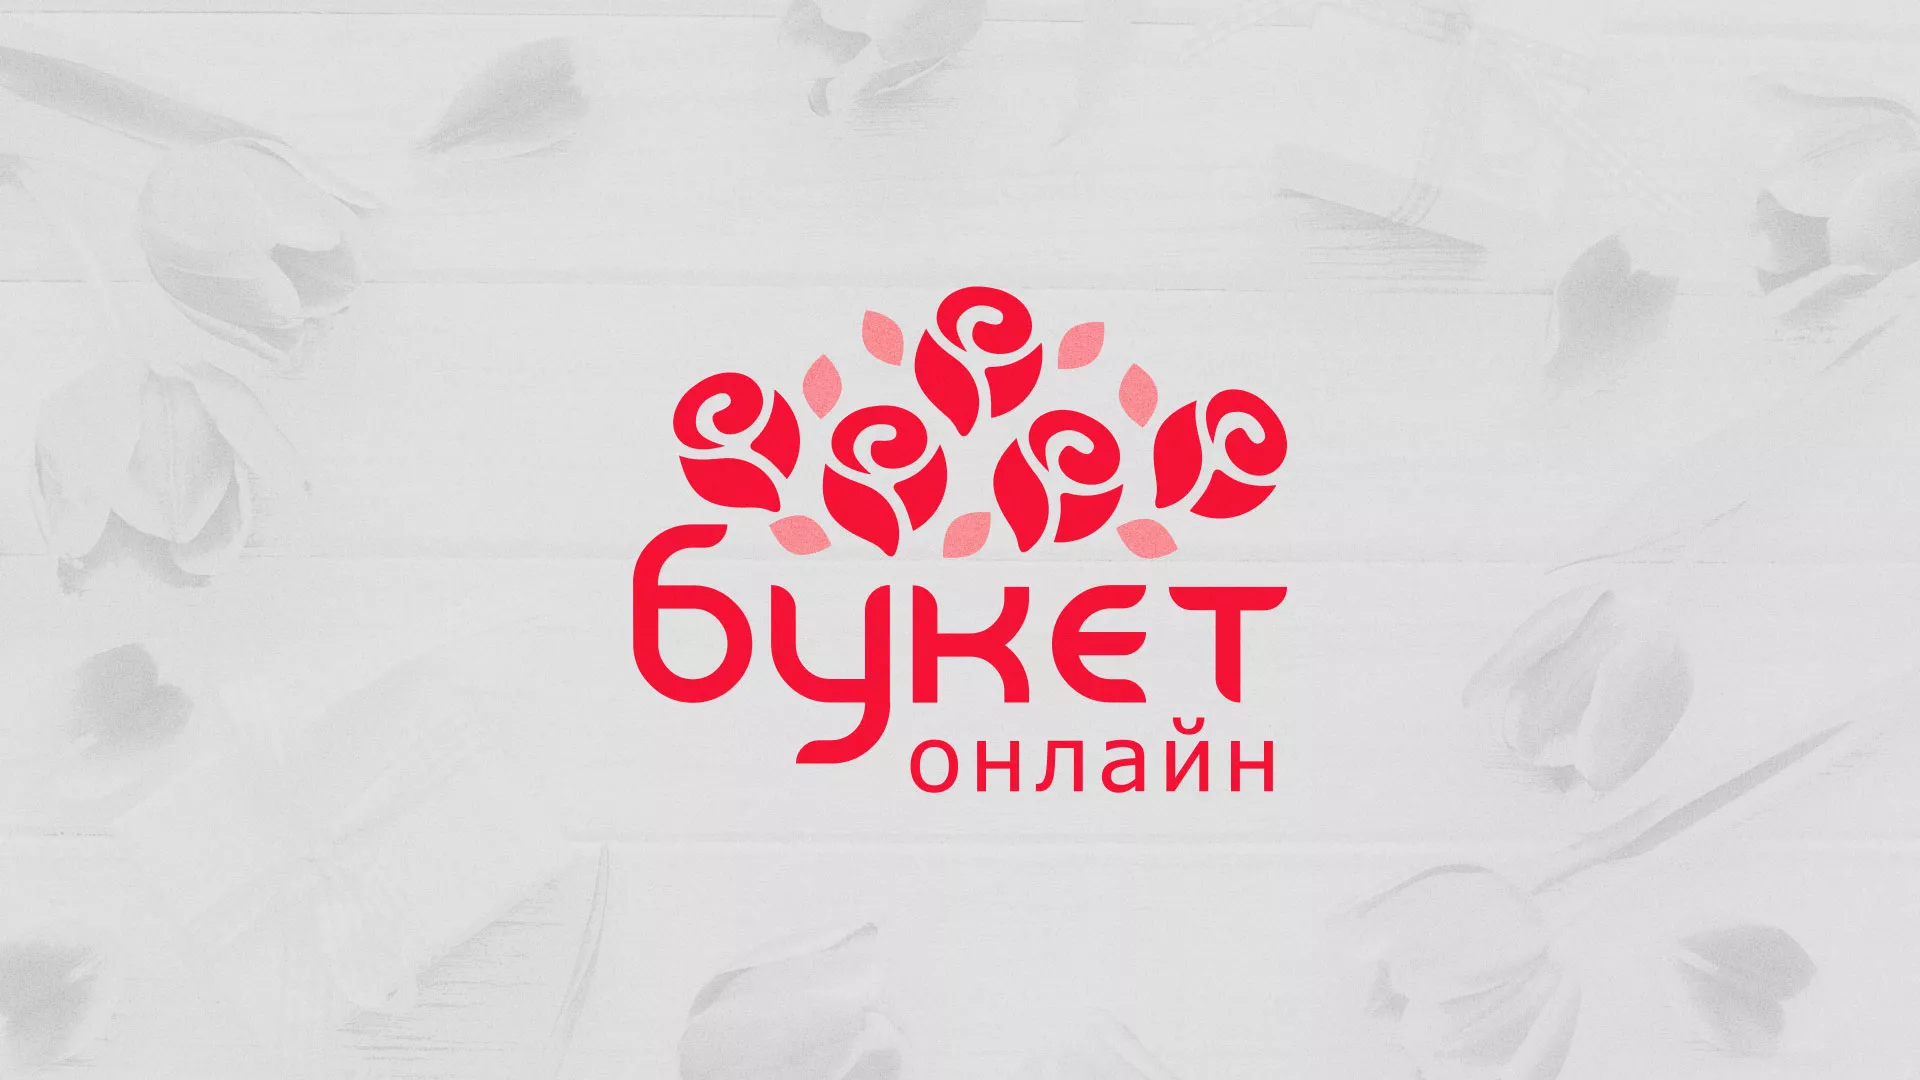 Создание интернет-магазина «Букет-онлайн» по цветам в Уфе